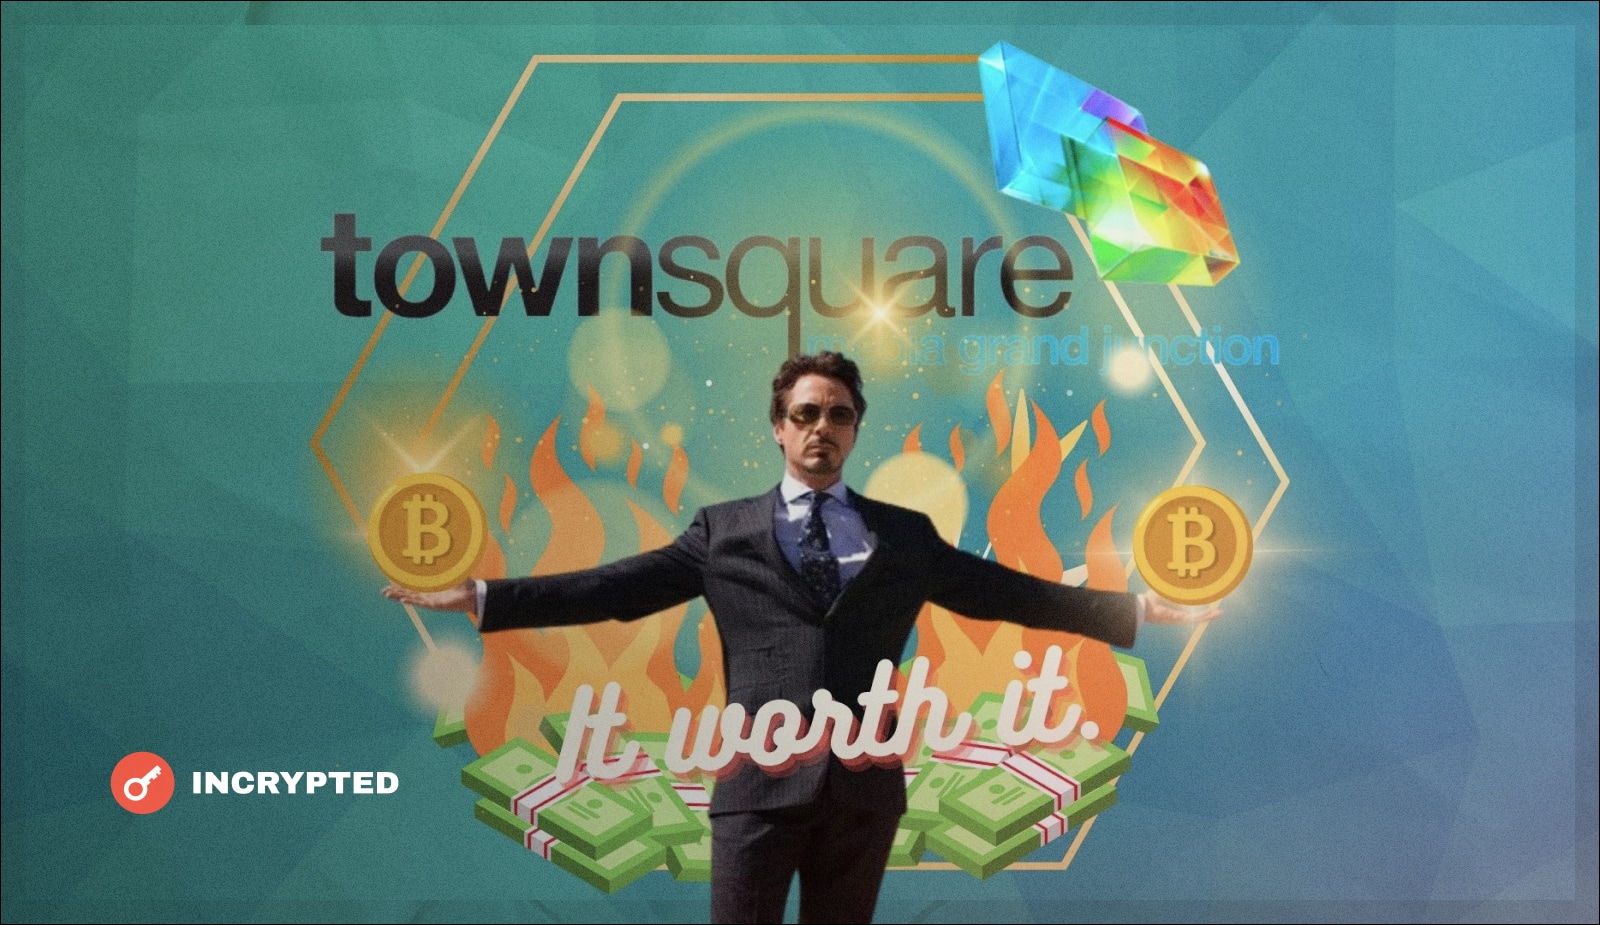 Townsquare Media купила BTC на 5 млн долларов Из-за колебаний курса компания потеряла 0,4 млн долларов, но считает что это стоит того Фирма видит потенциал криптовалюты и хочет реализовать его